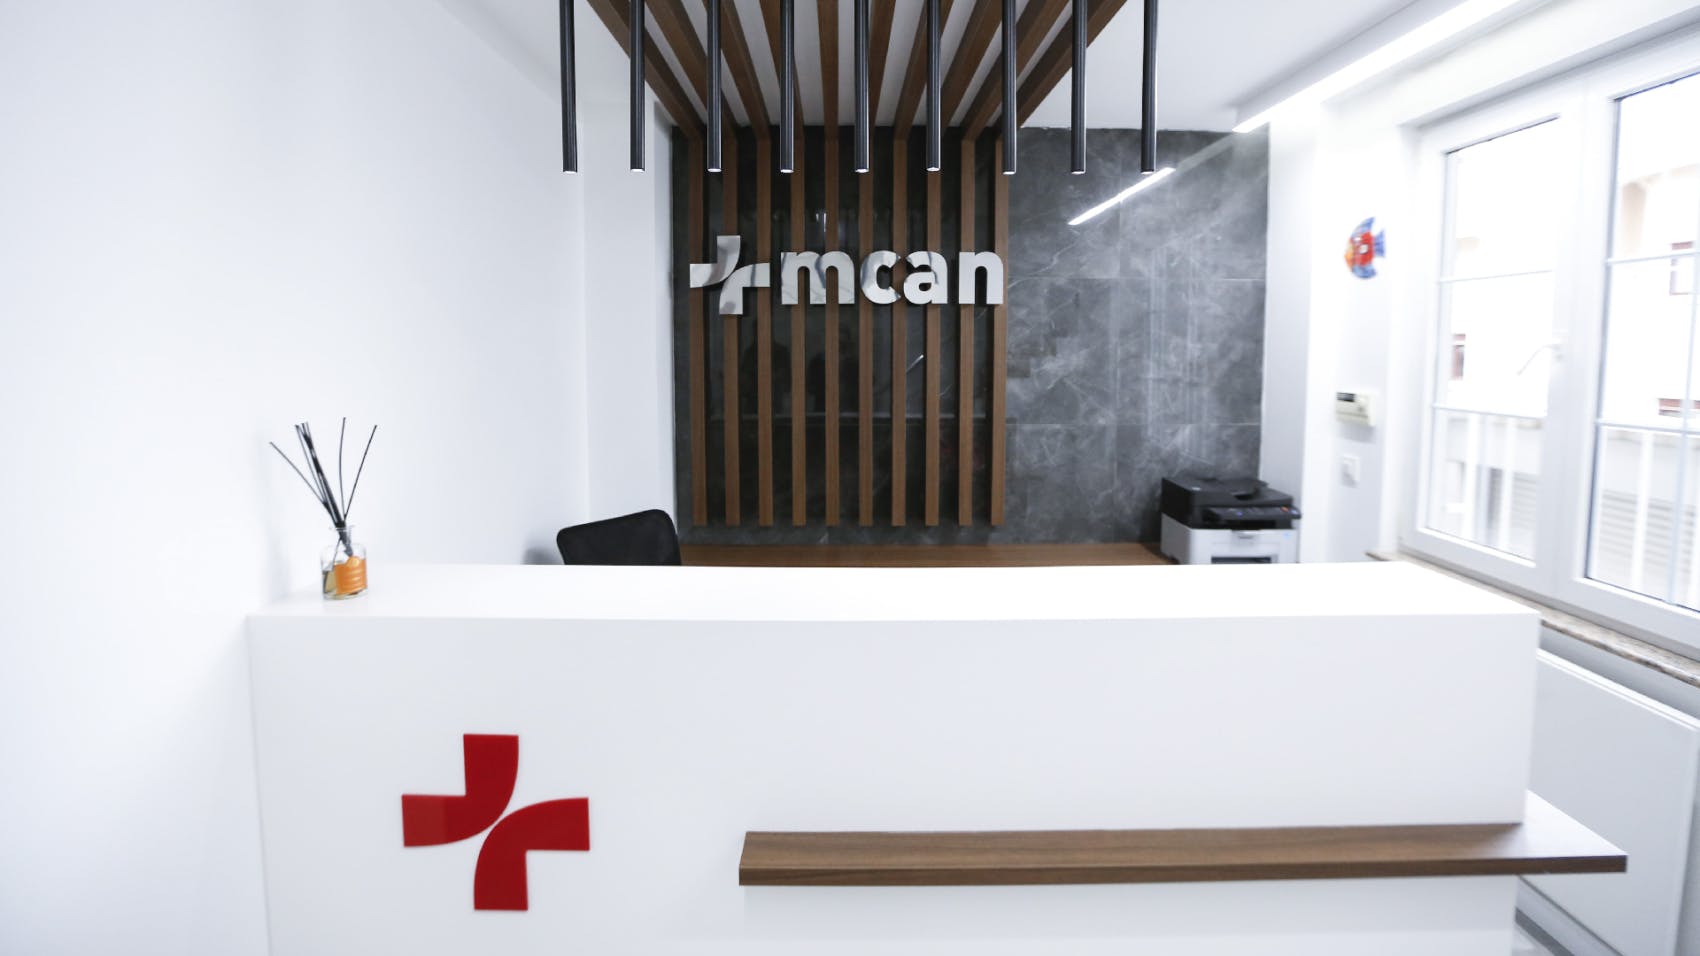 MCAN Health Clinic